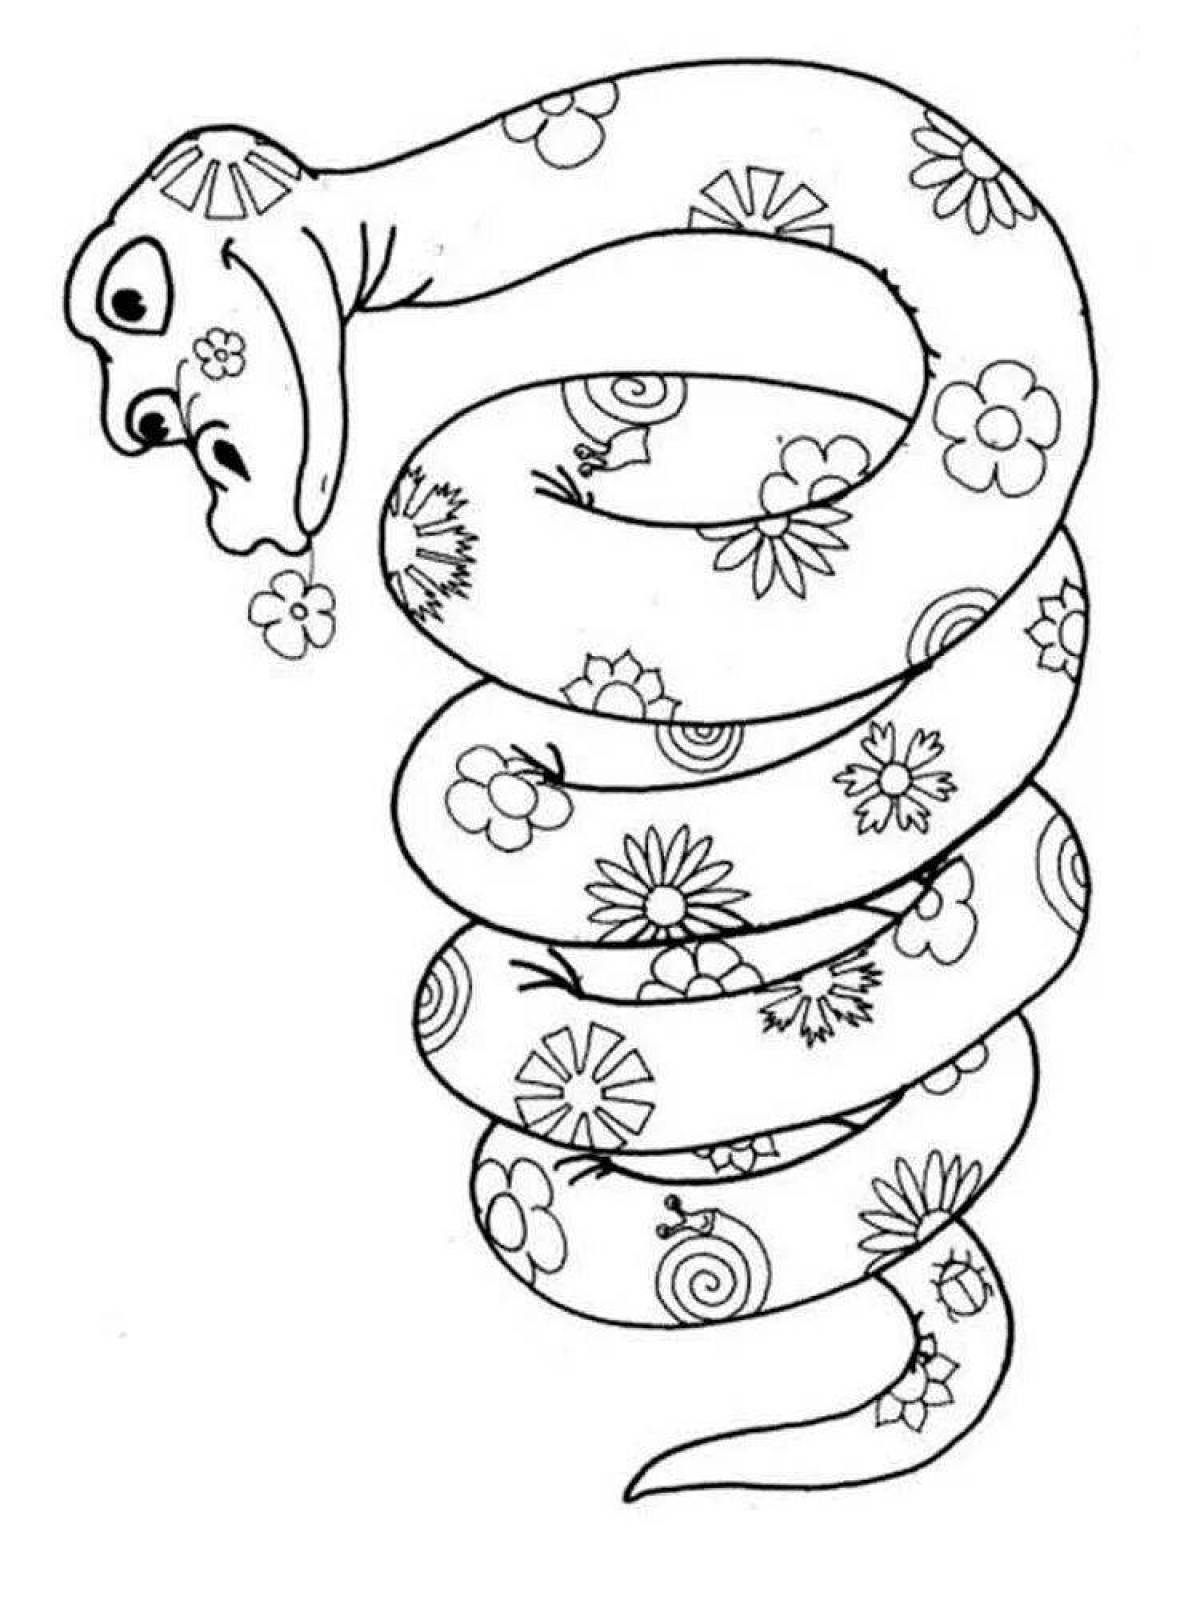 Раскраски змей распечатать. Змея раскраска. Змея раскраска для детей. Раскраска змеи для детей. Удав раскраска для детей.